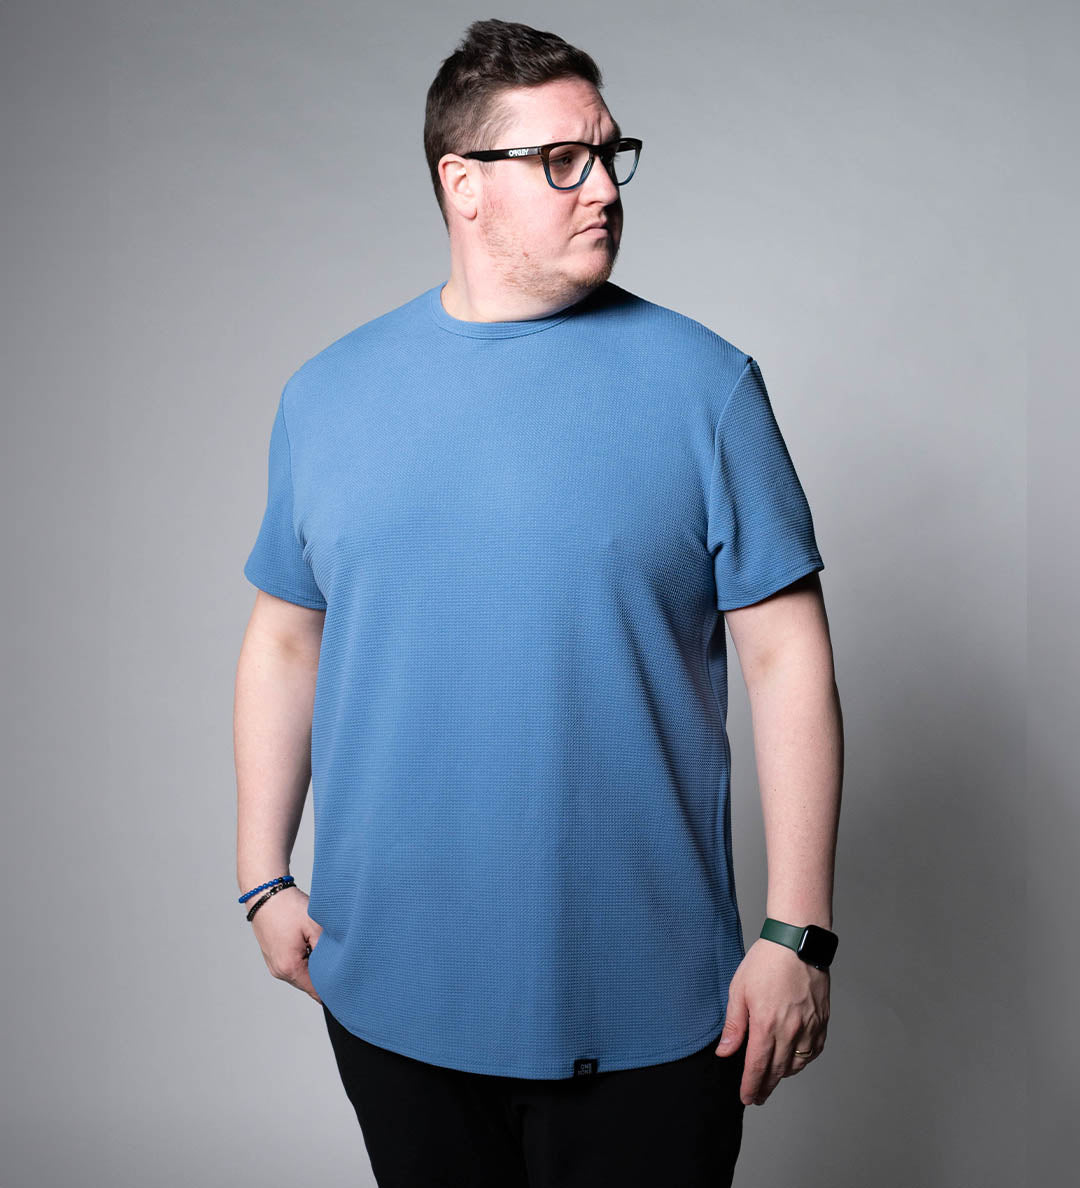 model-specs: Adam is 6-3 | 315 lbs | Size 2